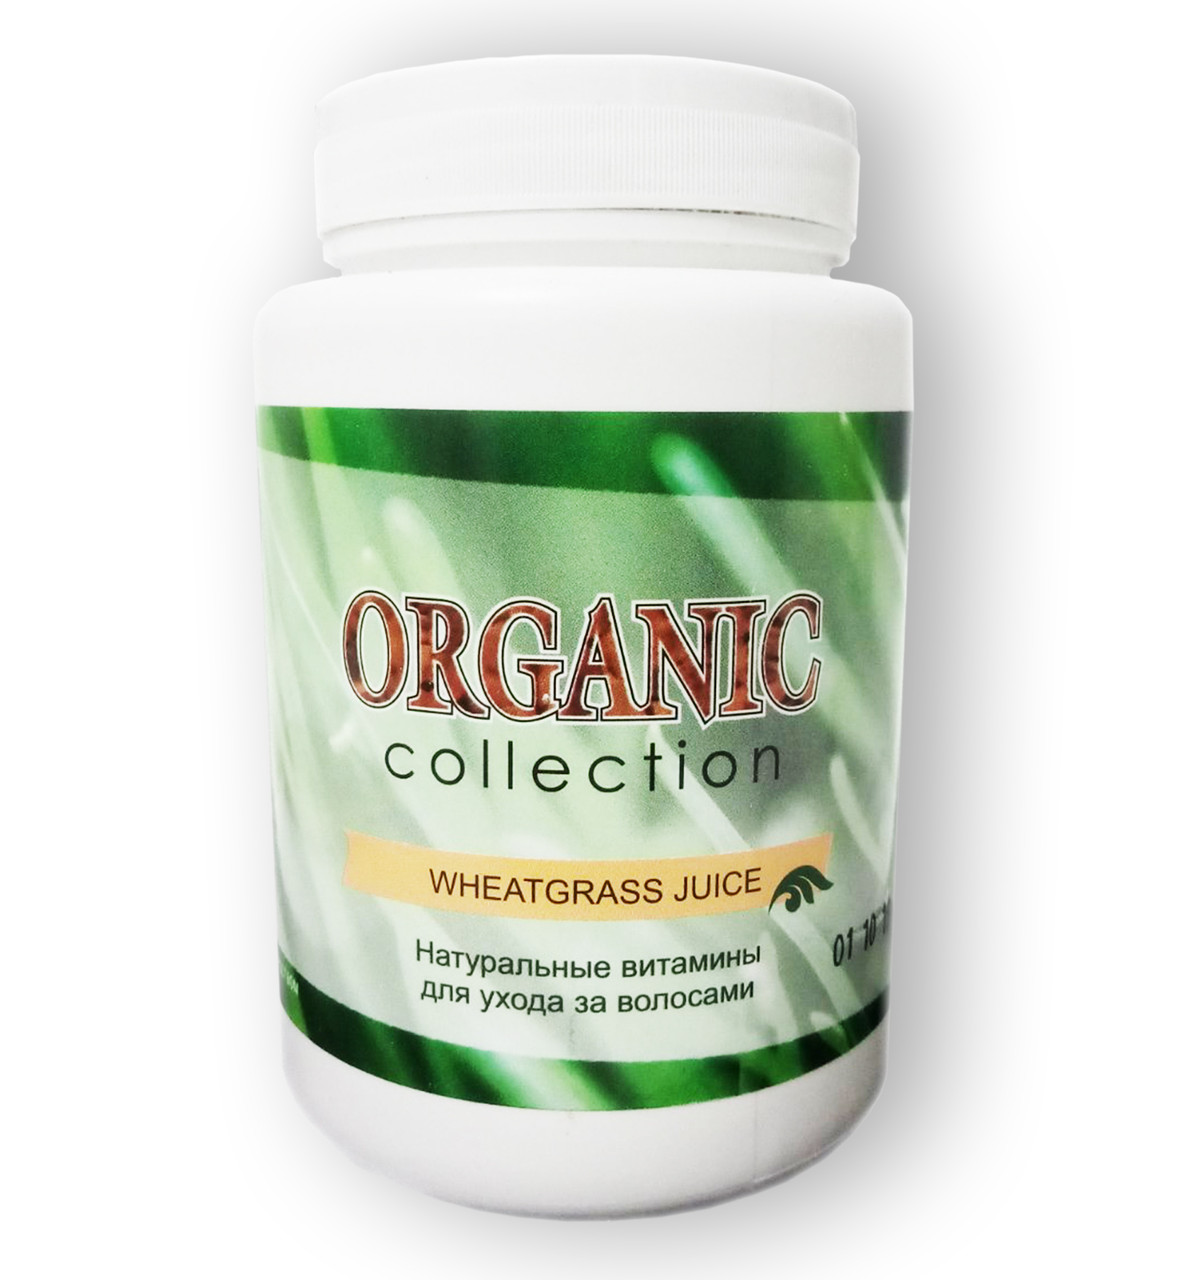 Wheatgrass - Вітамини для волосся від Organic Collection (Вітграсс)